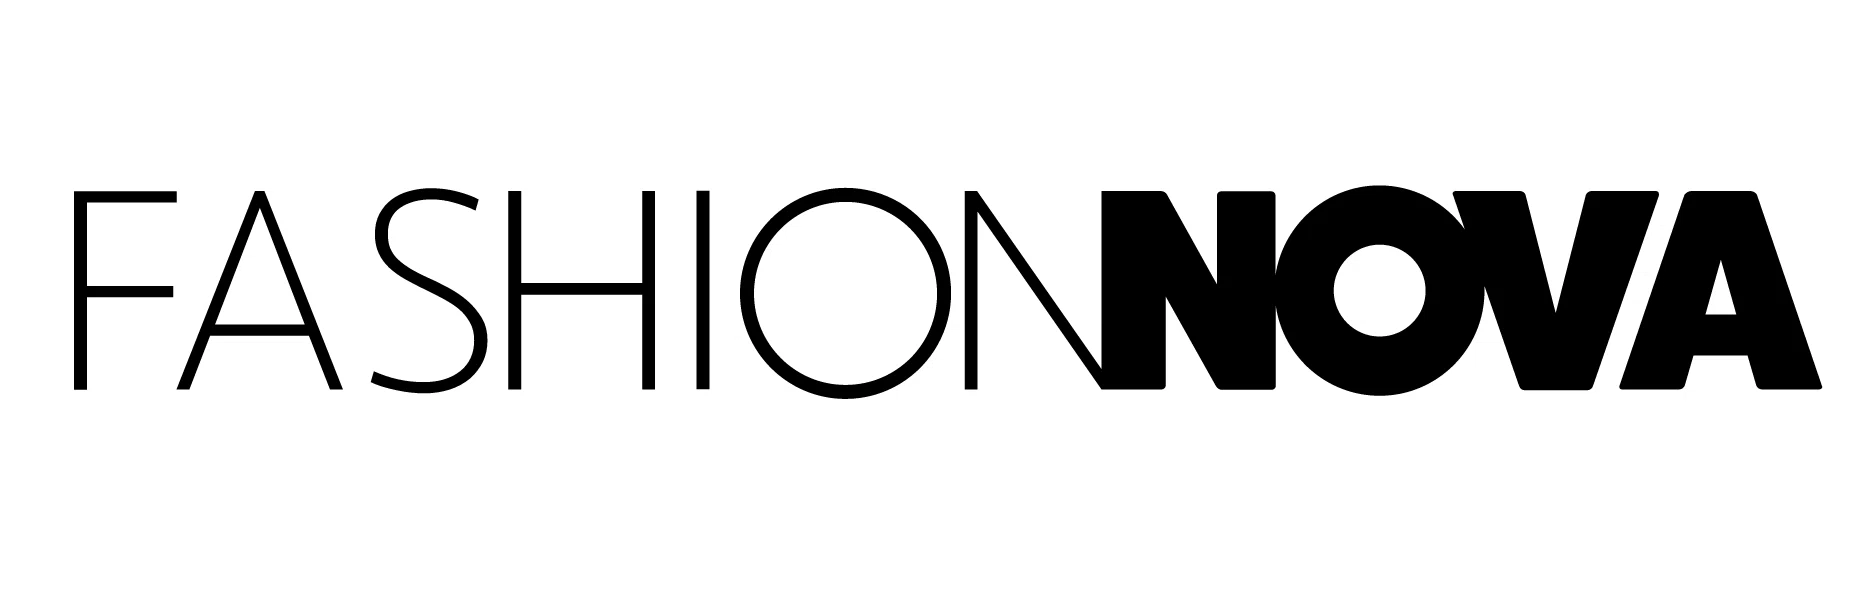 fashion nova coupon code 2015